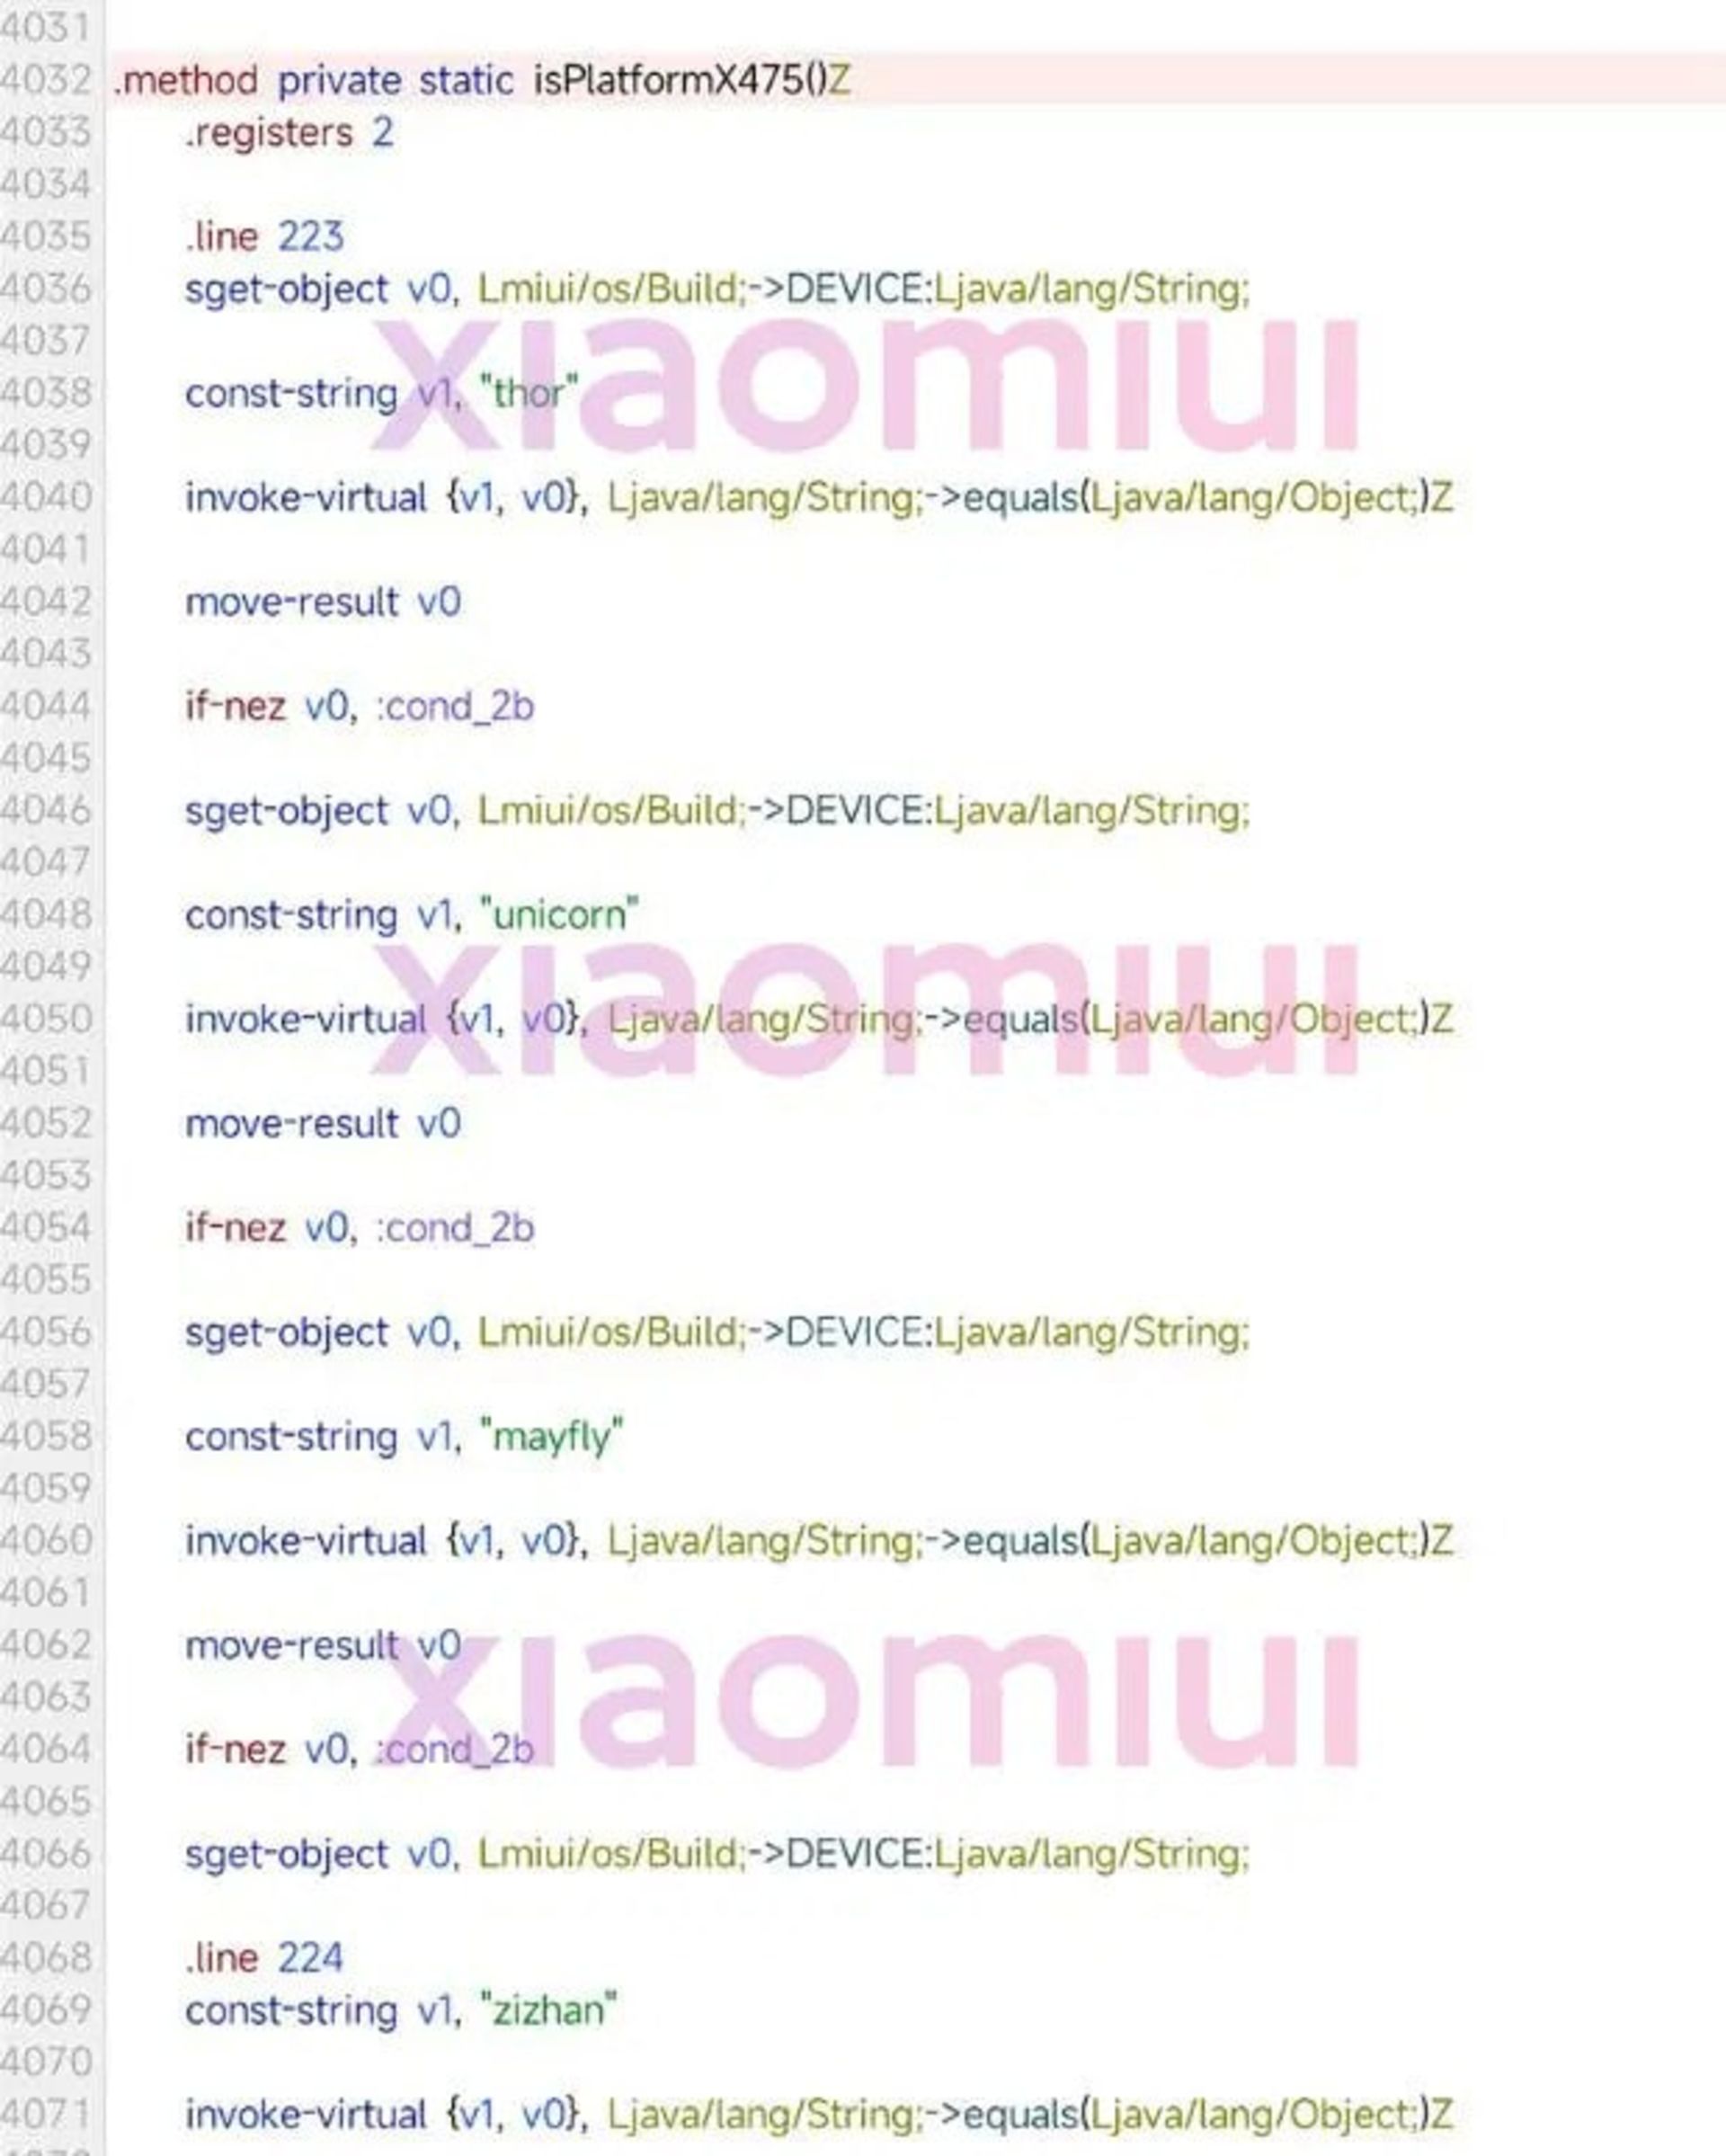 اسم رمزهای فاش شده از کدهای منبع MIUI